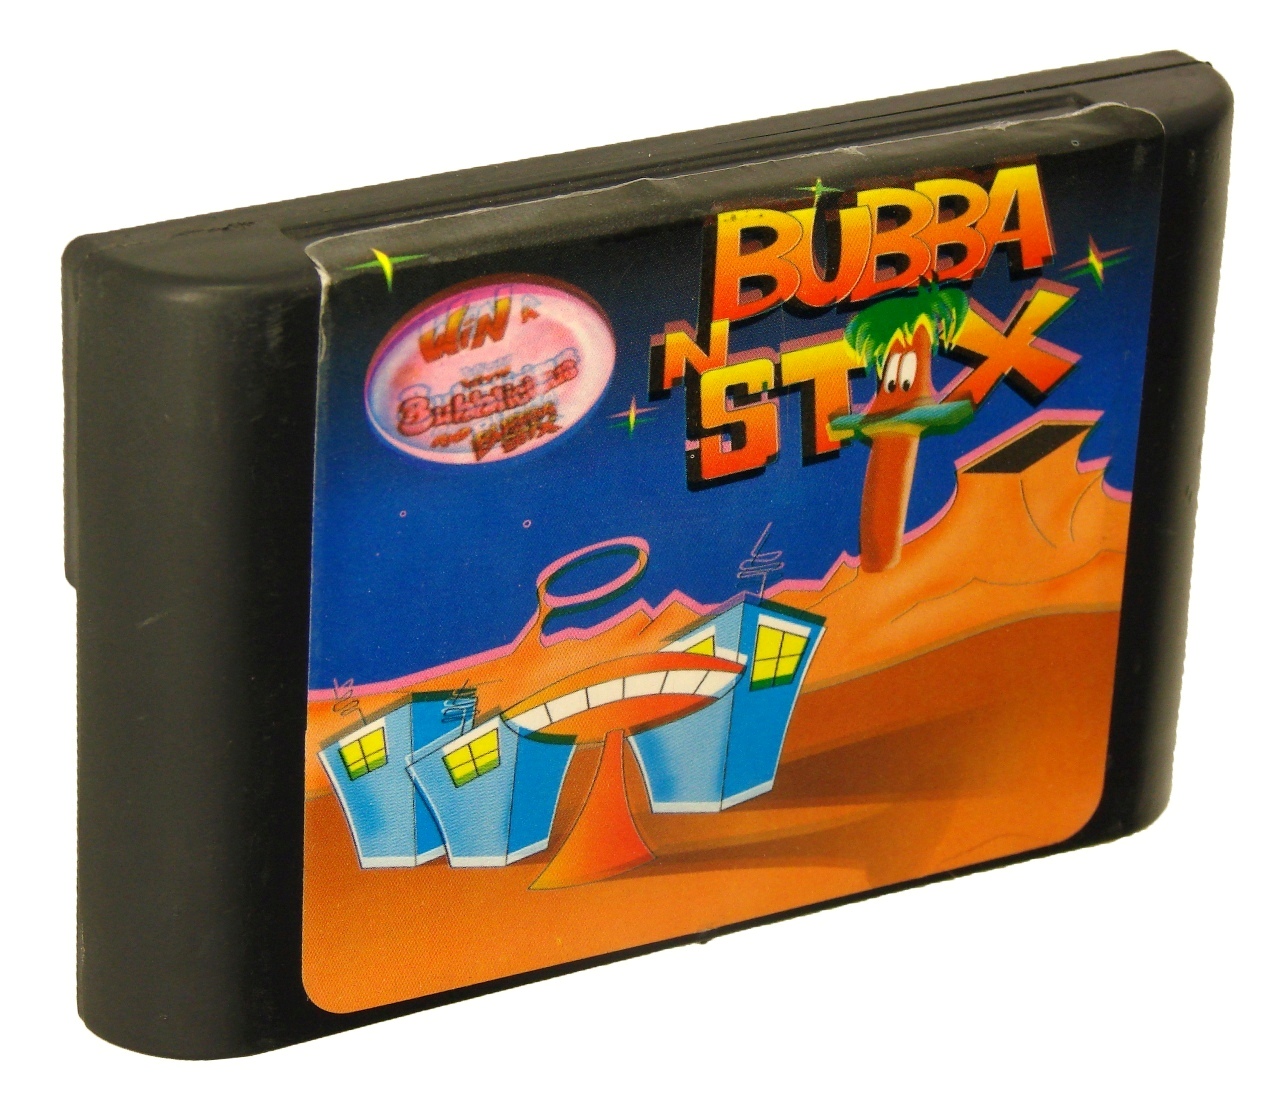 Картридж для Sega Bubba’n’stix (Sega)